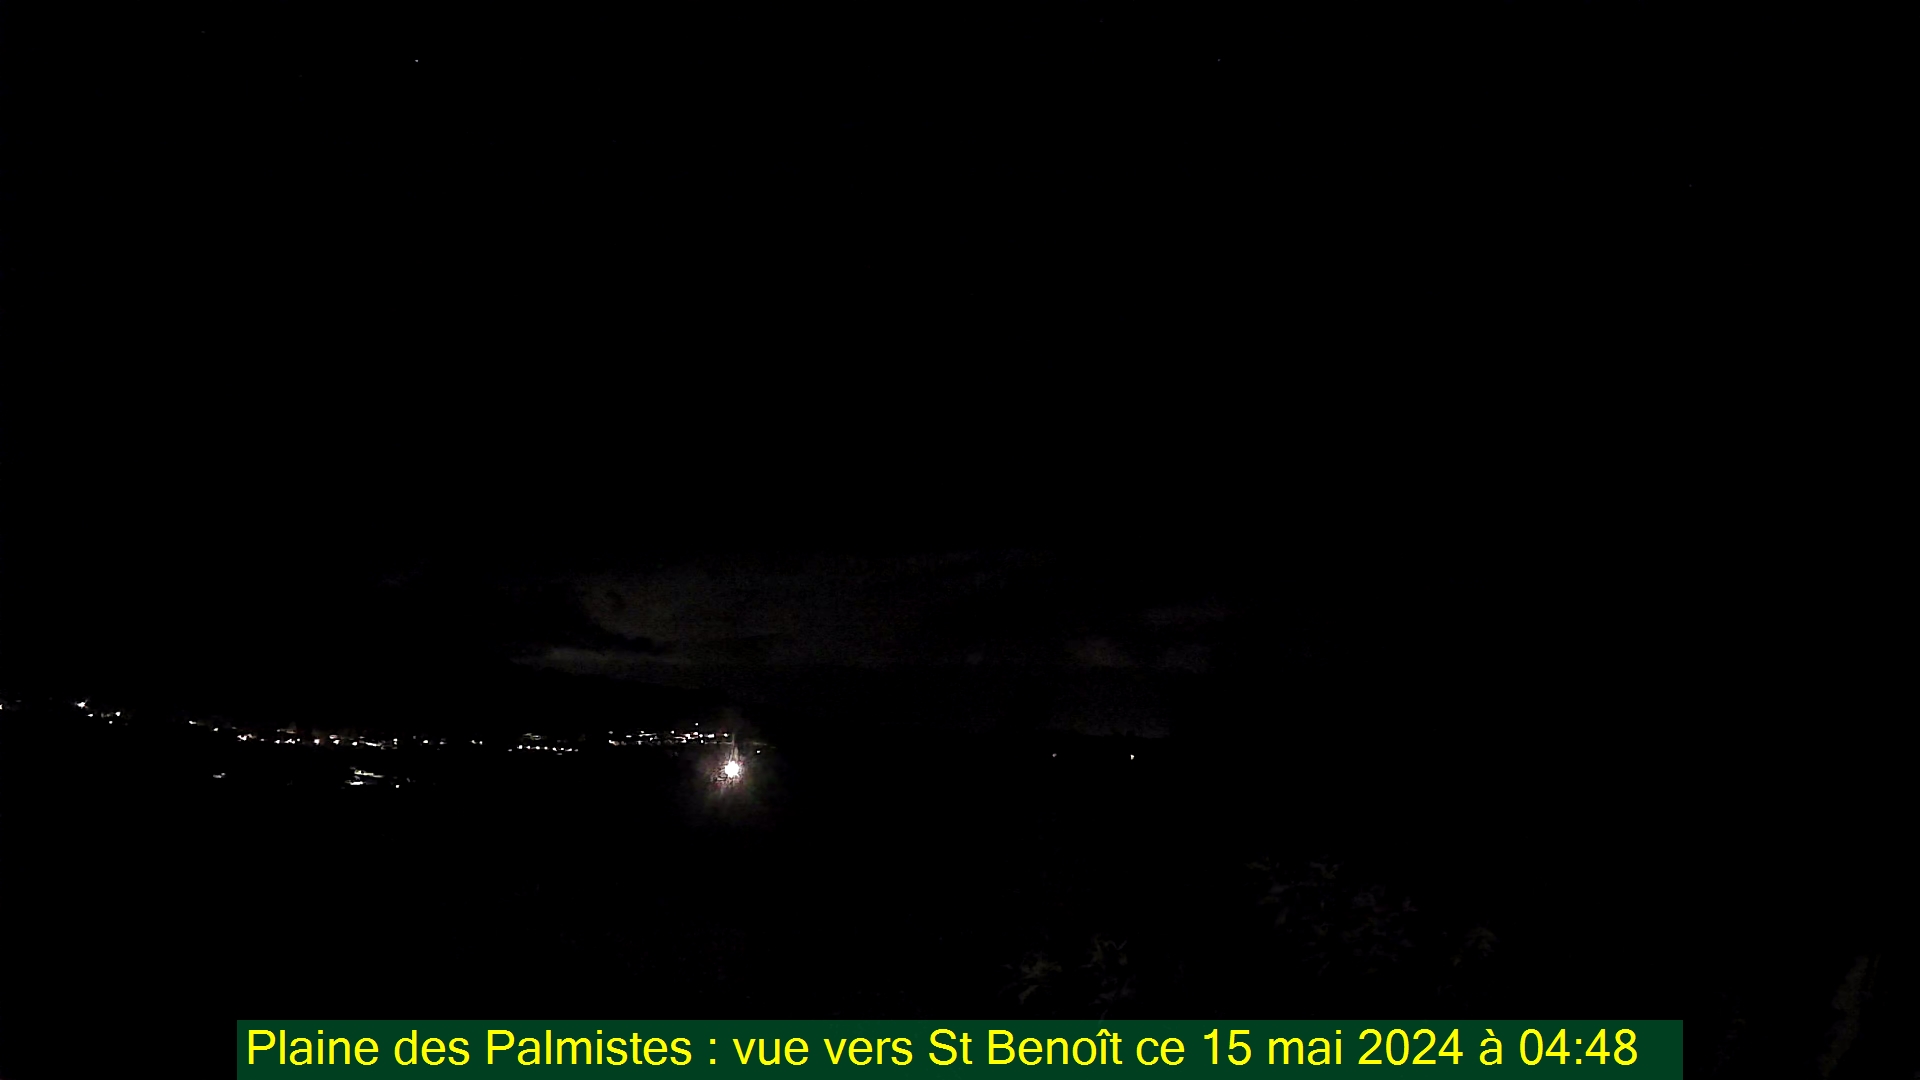 Saint-Denis (Réunion) Mon. 04:50